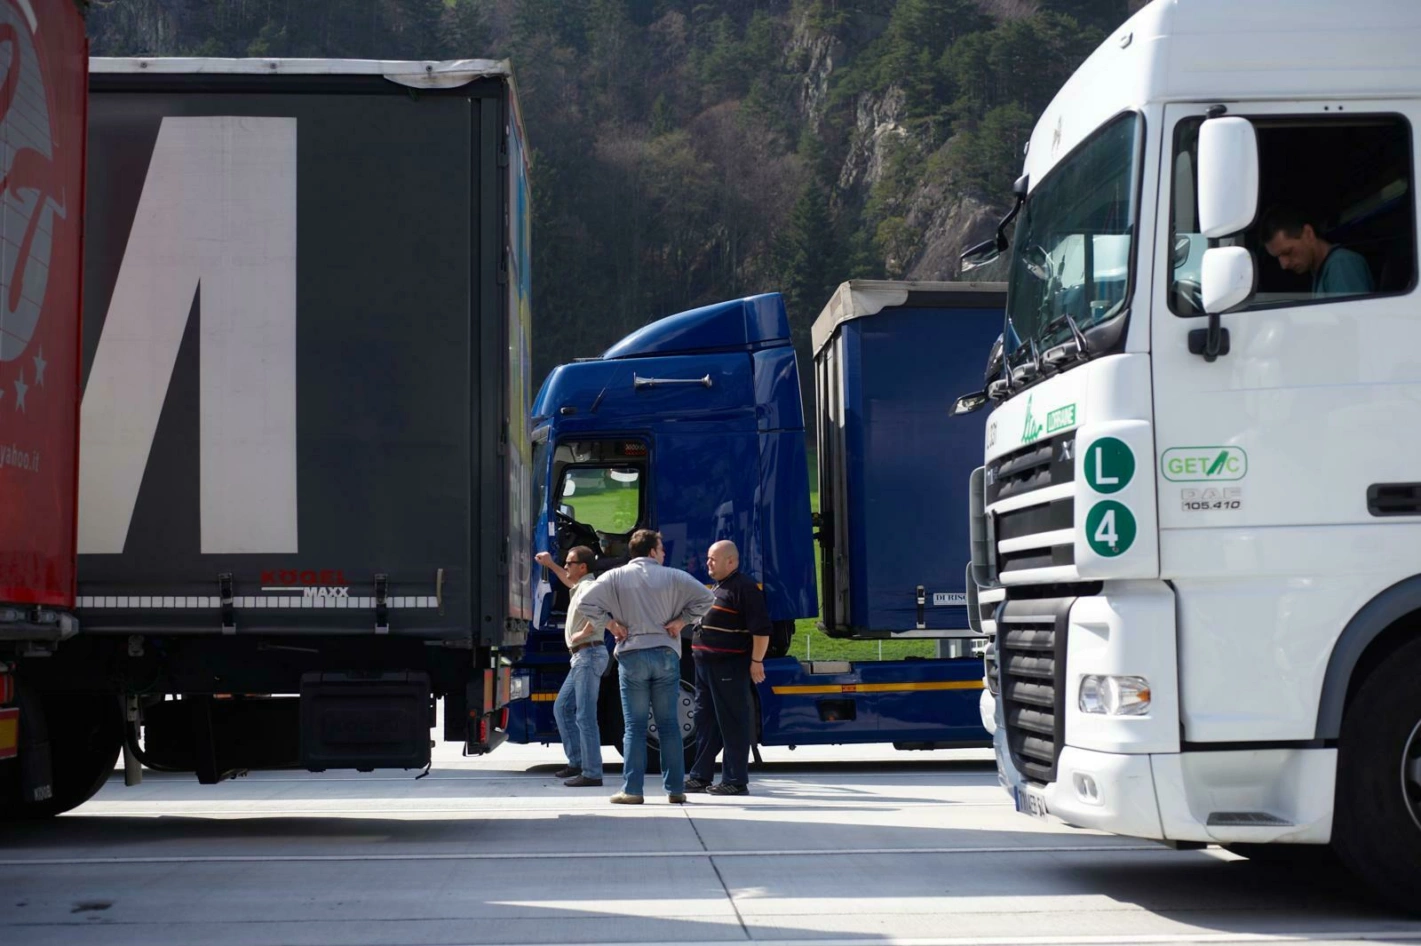 Routiers Suisses verweist gerne darauf, wie wichtig die Lastwagenfahrer für eine sichere Logistik und Landesversorgung seien. Foto: Franca Pedrazzetti